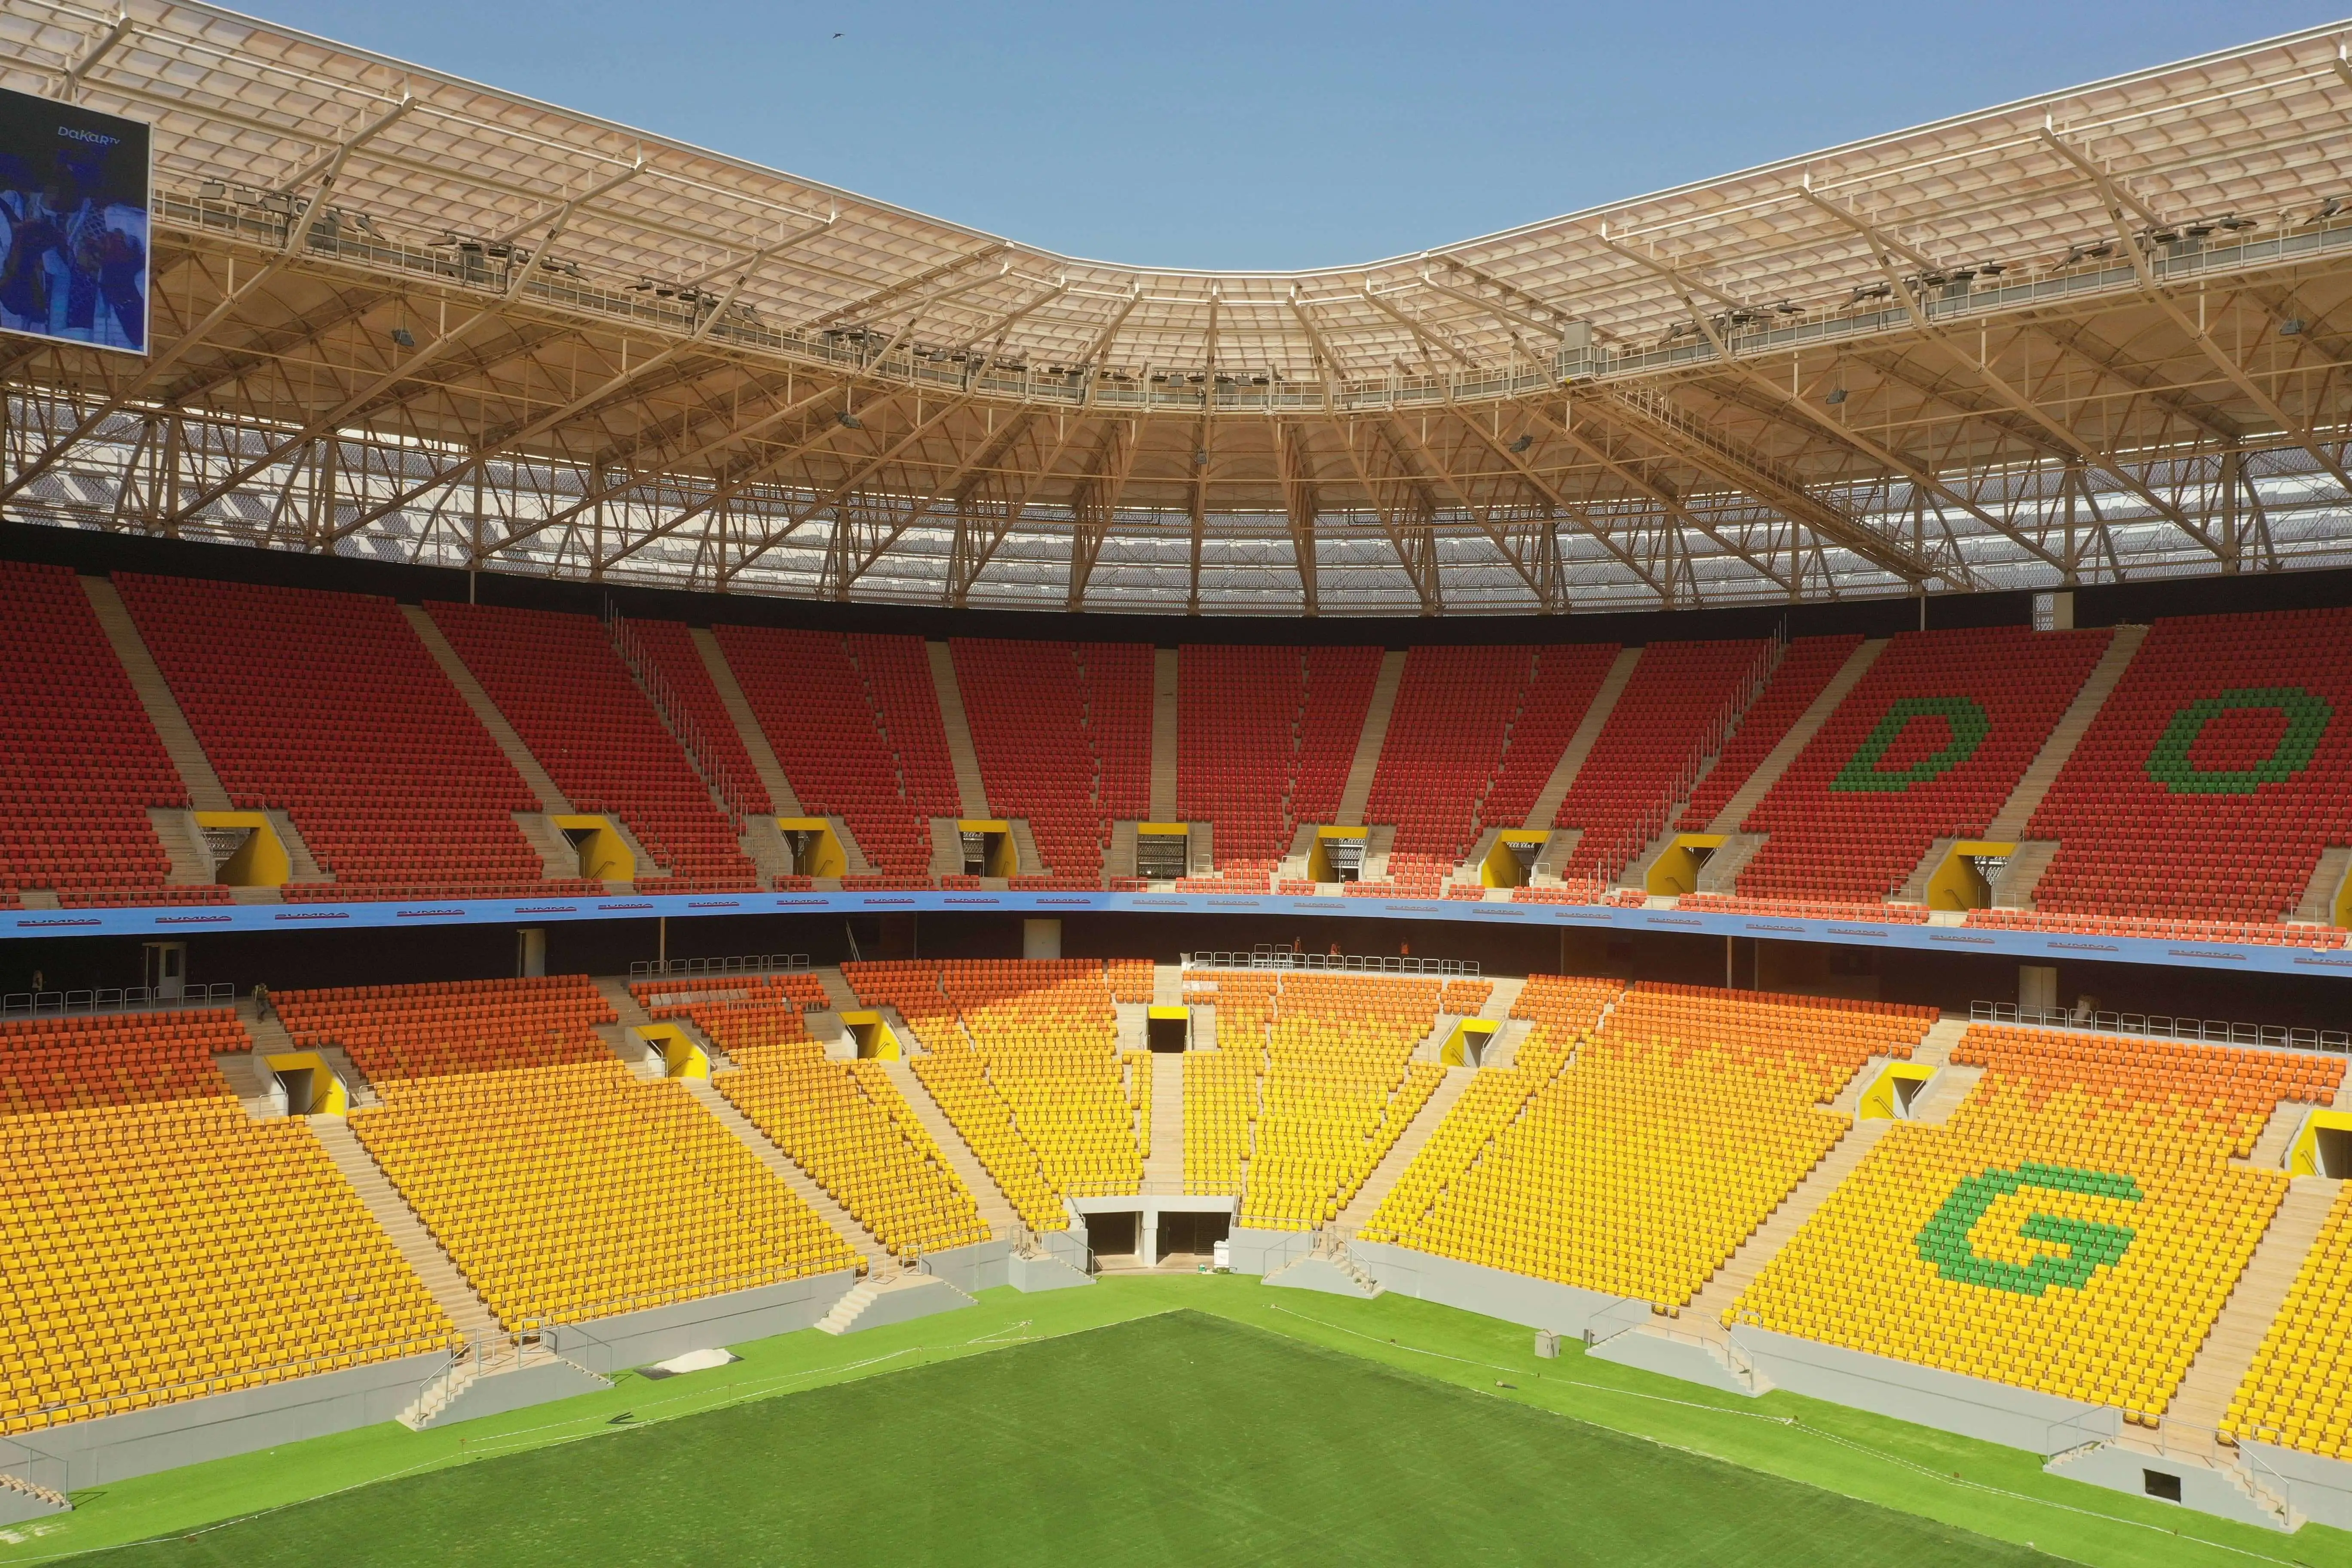 Stadium Seating Manufacturer Image